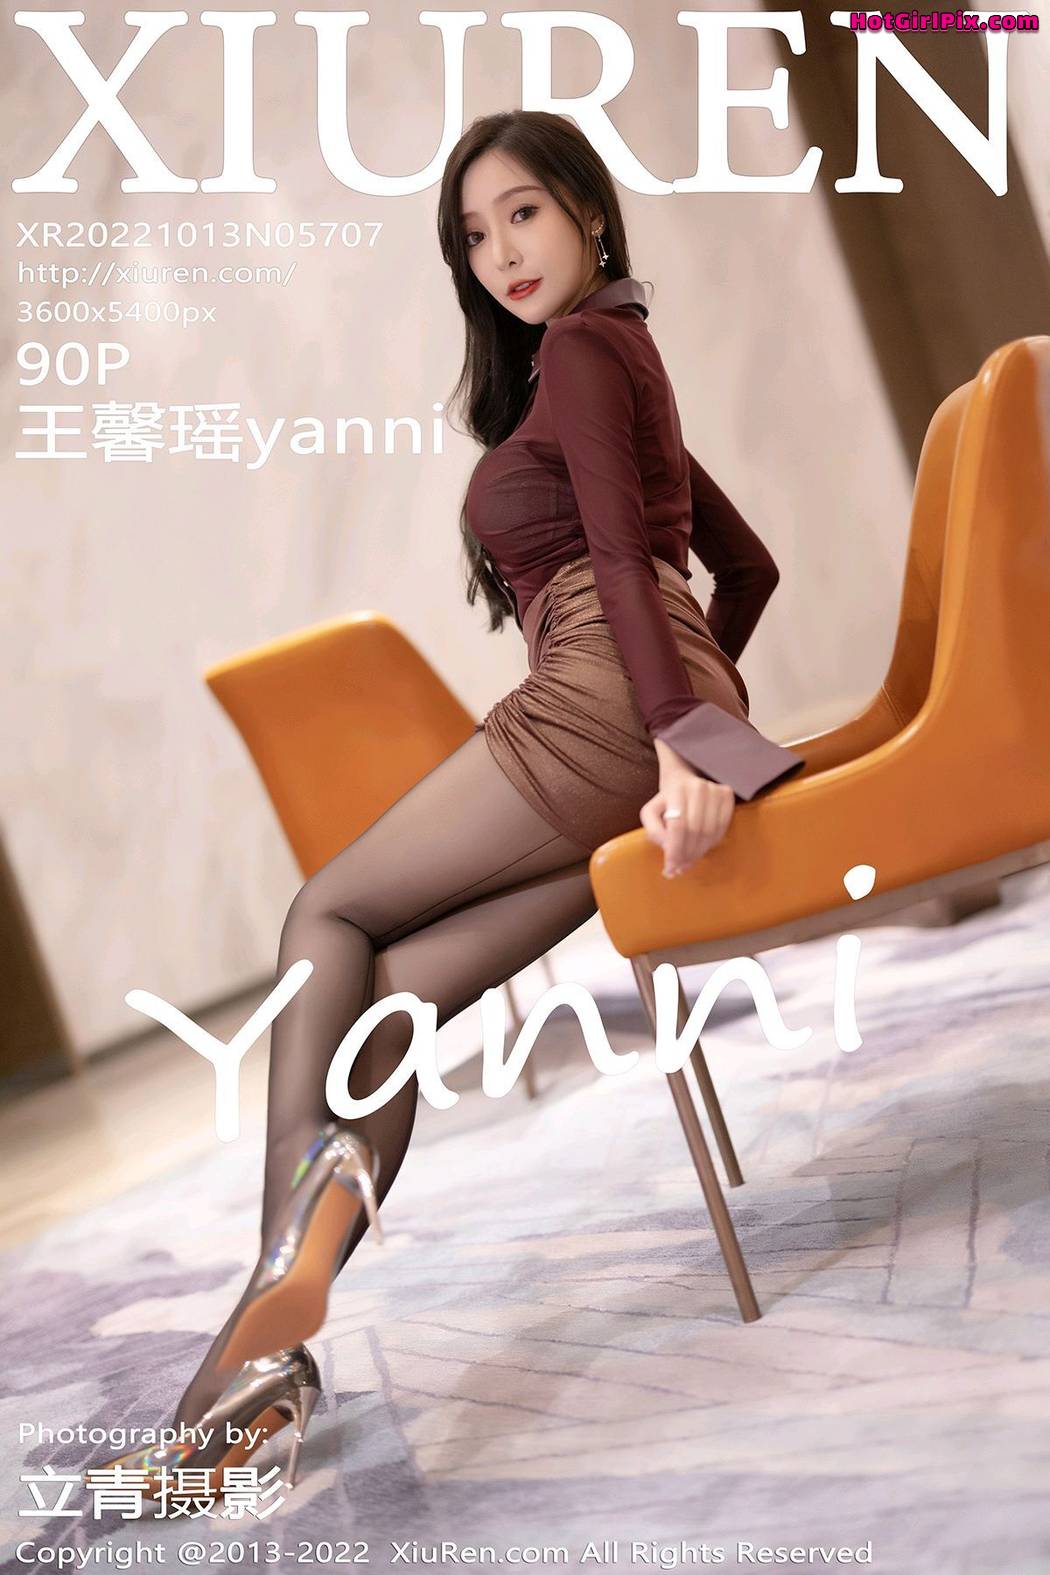 [XIUREN] No.5707 Wang Xin Yao 王馨瑶yanni Cover Photo